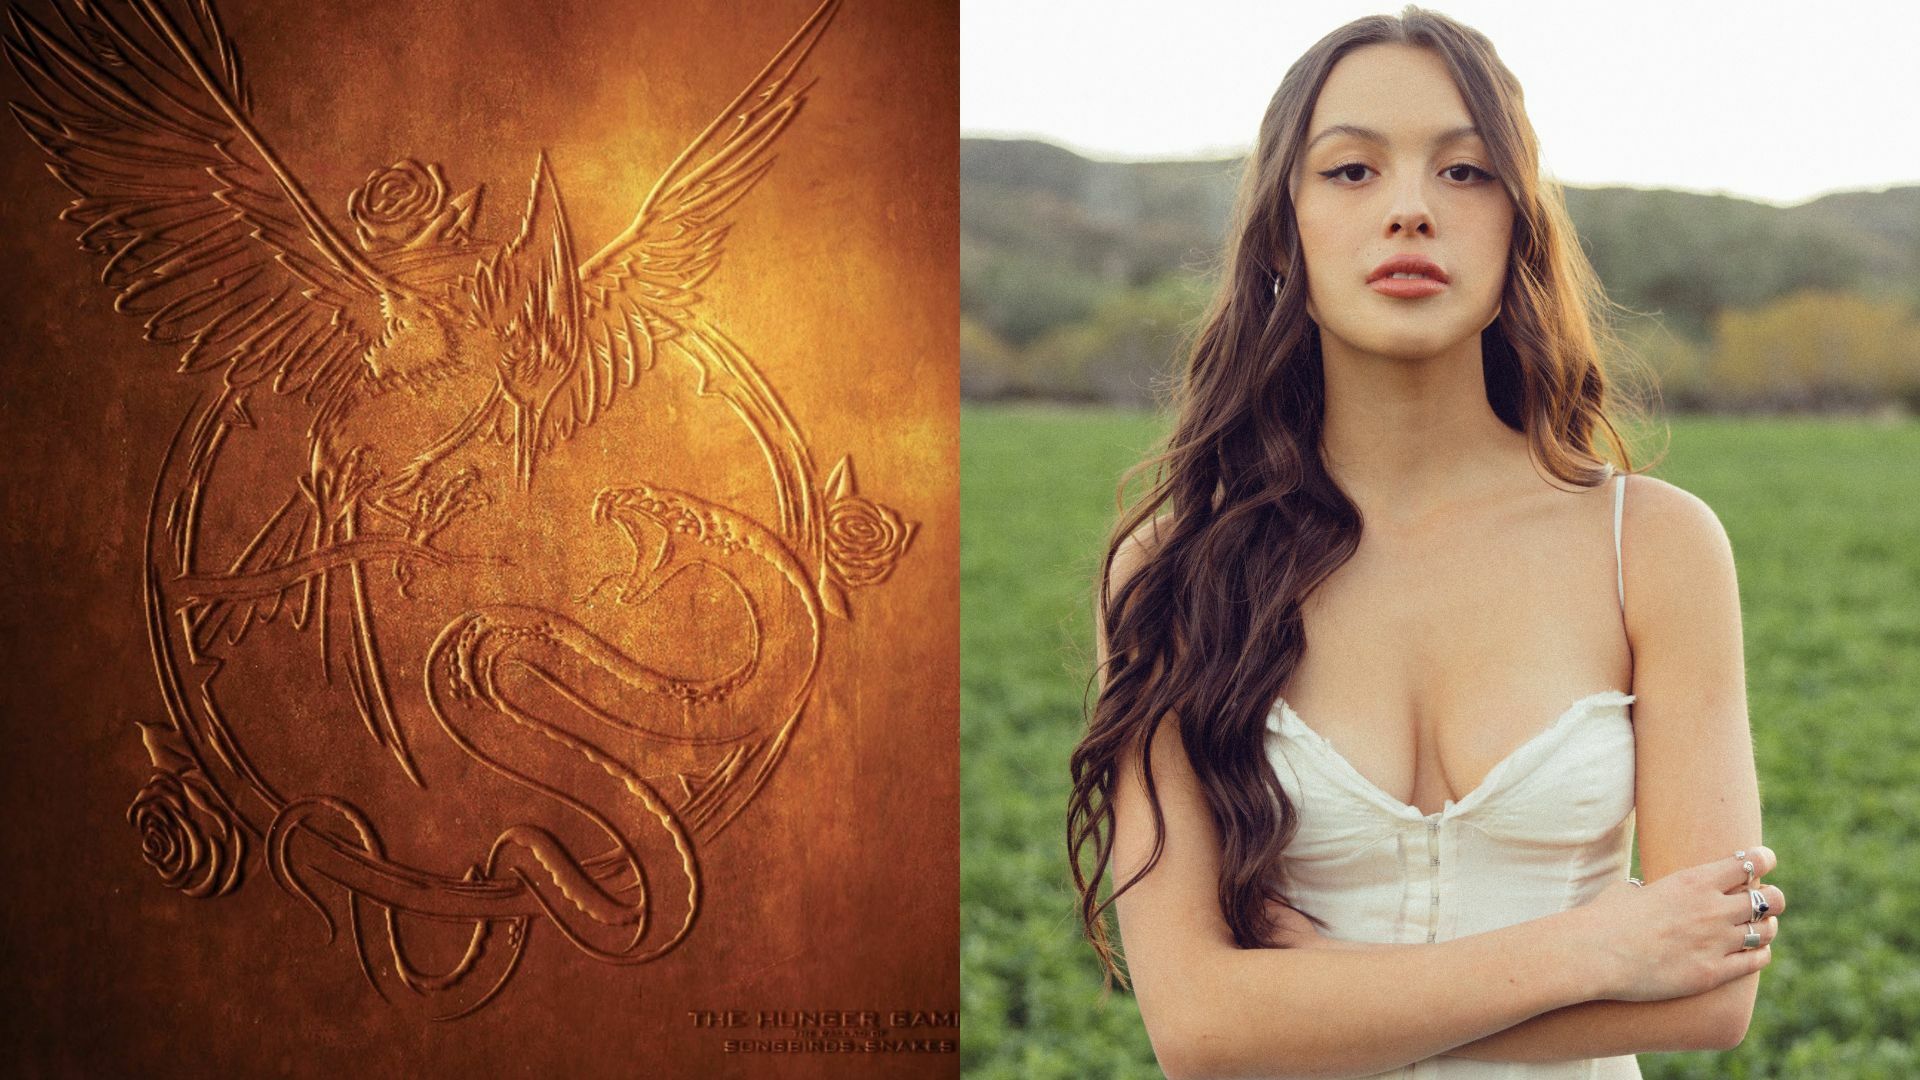 The Hunger Games: The Ballad Of Songbirds & Snakes - Vinilo naranja - Olivia  Rodrigo - Varios Artistas - Disco